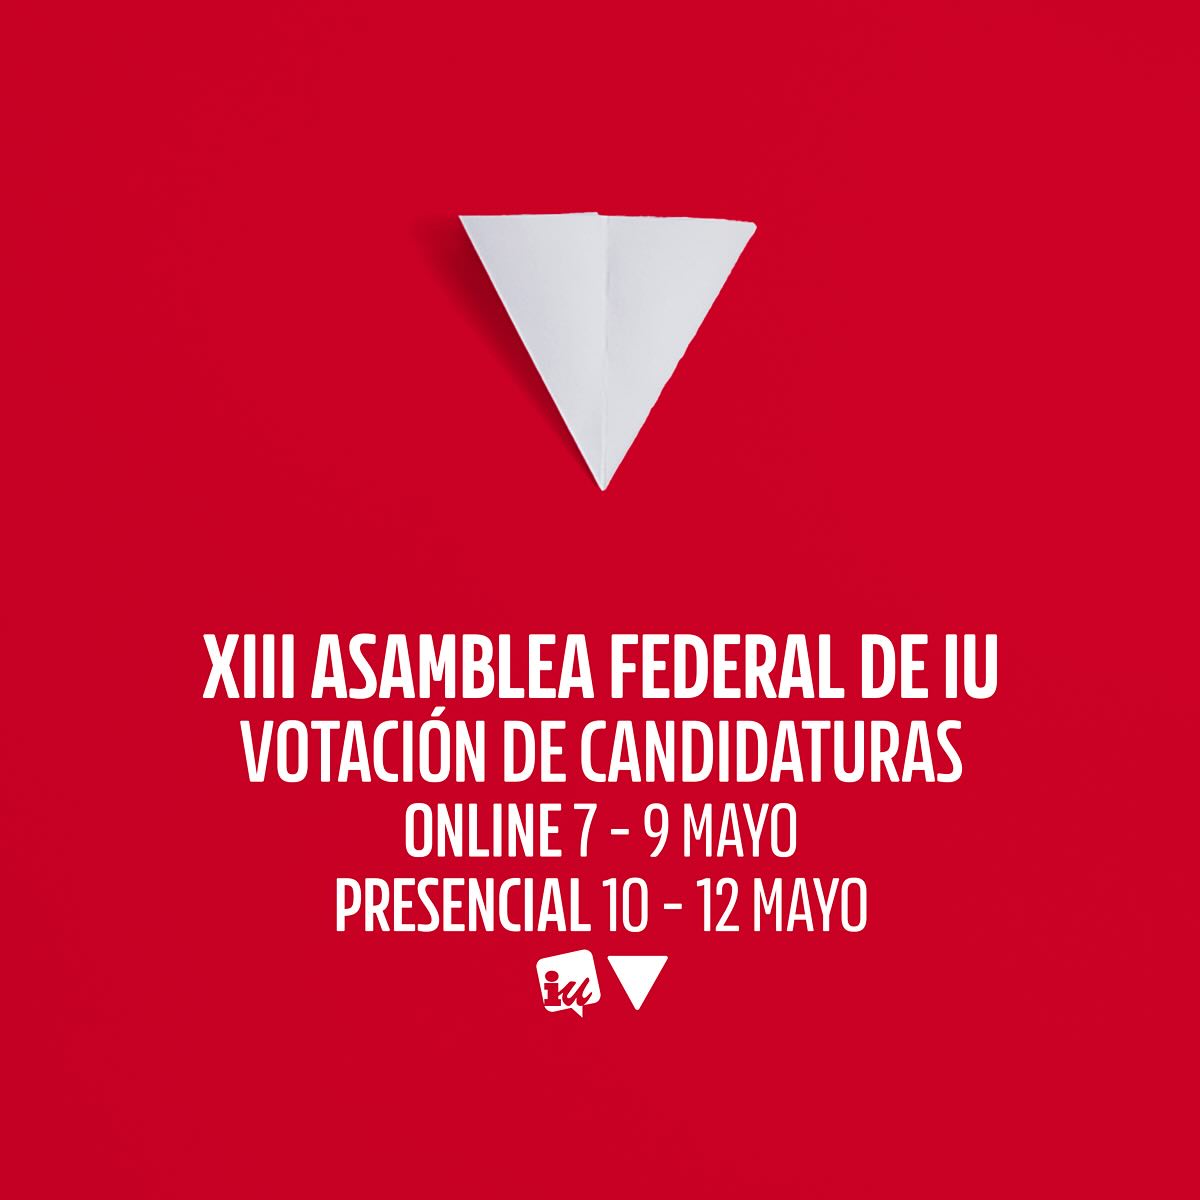 Abierto el proceso de votación de la XIII Asamblea Federal de @IzquierdaUnida Podrás hacerlo de forma online hasta el 9 de mayo. De forma presencial entre el 10 y el 12 de mayo en las asambleas que se abrirán para tal ocasión. #IzquierdaUnida